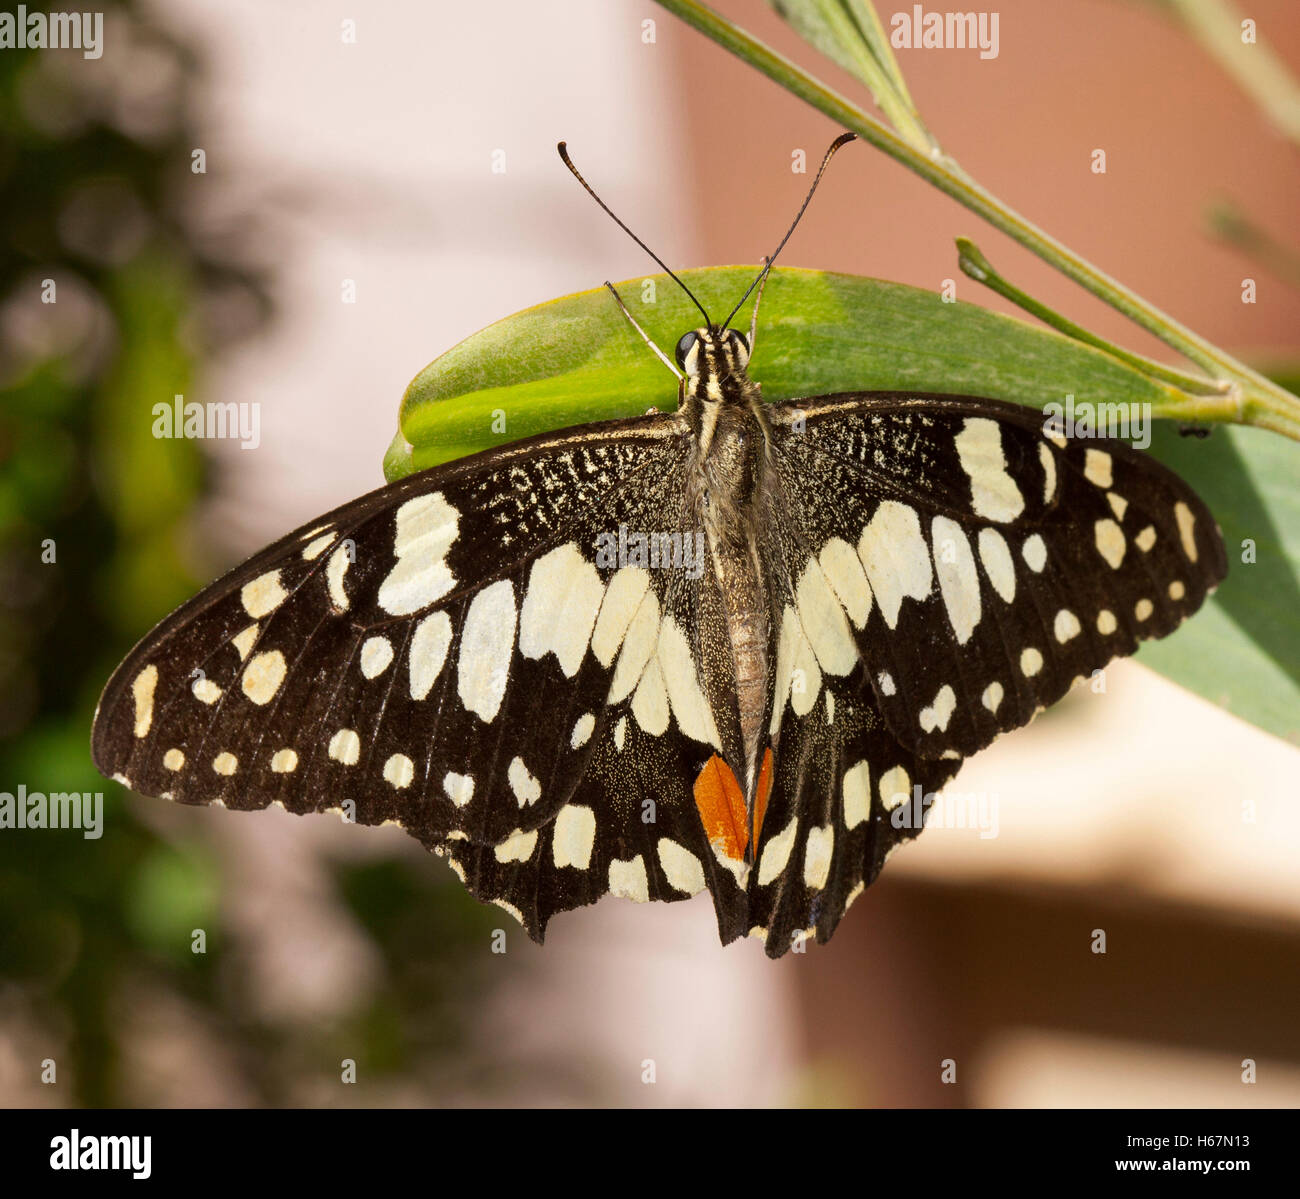 Schwarzen & weißen australischen karierten Schwalbenschwanz Schmetterling Papilio Demoneus auf grünes Blatt von Flechtwerk Baum gegen hellen Hintergrund Stockfoto